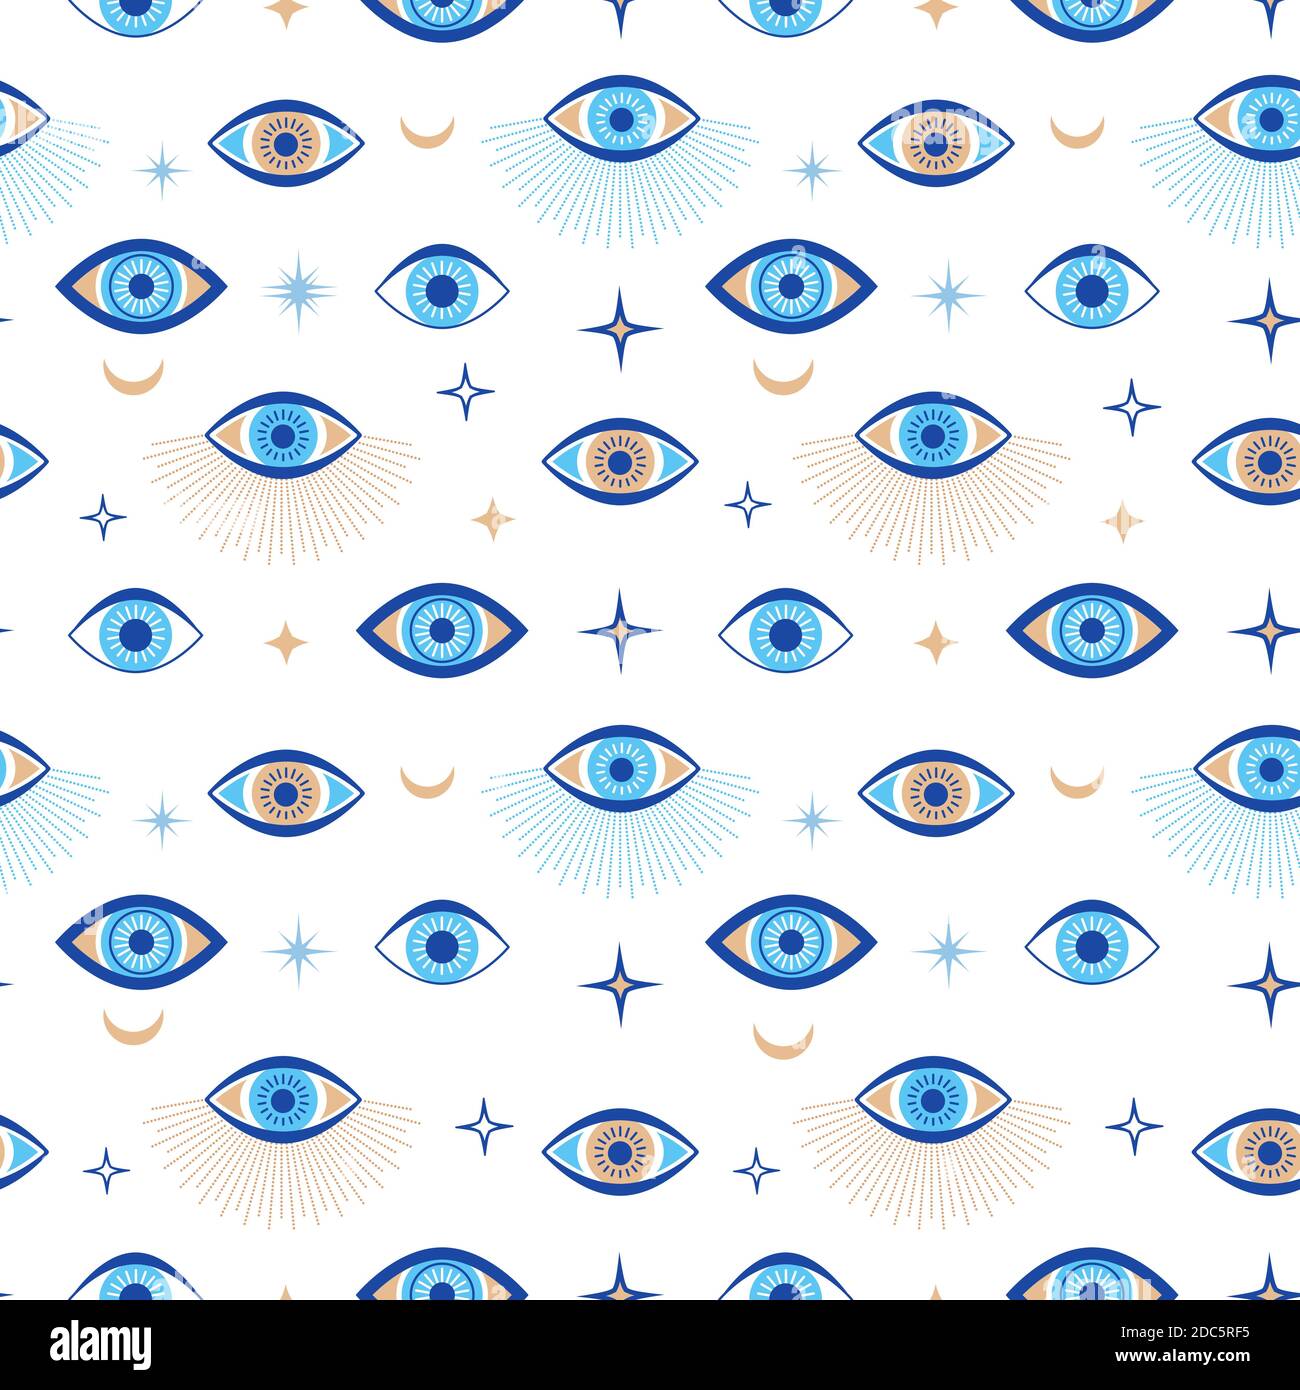 Seamless Muster für böse Augen. Magischer Talisman und okkultes Symbol. Griechisch ethnisch blau, weiß und golden dritten Augen. Flache Vektor abstrakte Tapete Stock Vektor